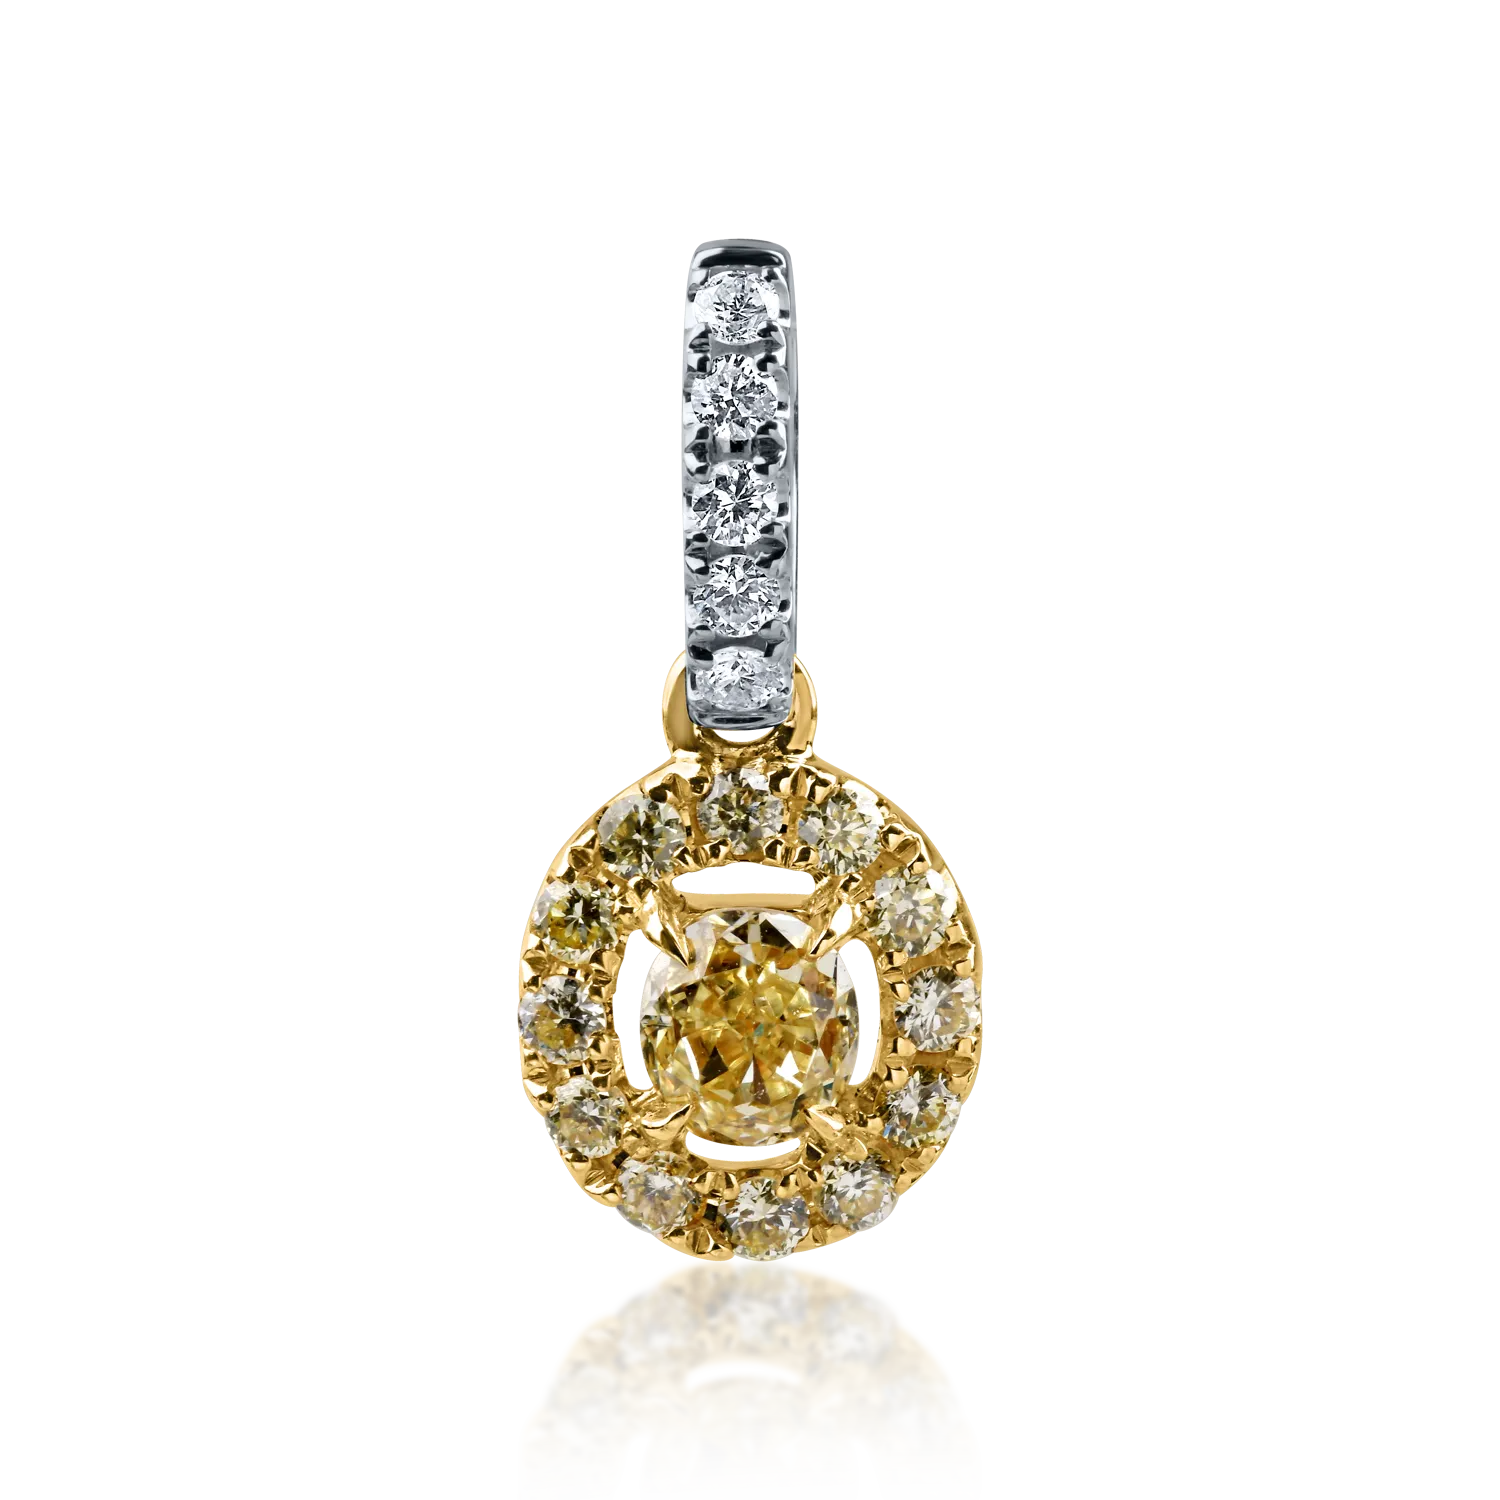 Sárga-fehér arany medál 0.148ct sárga díszes gyémánttal és 0.108ct gyémántokkal